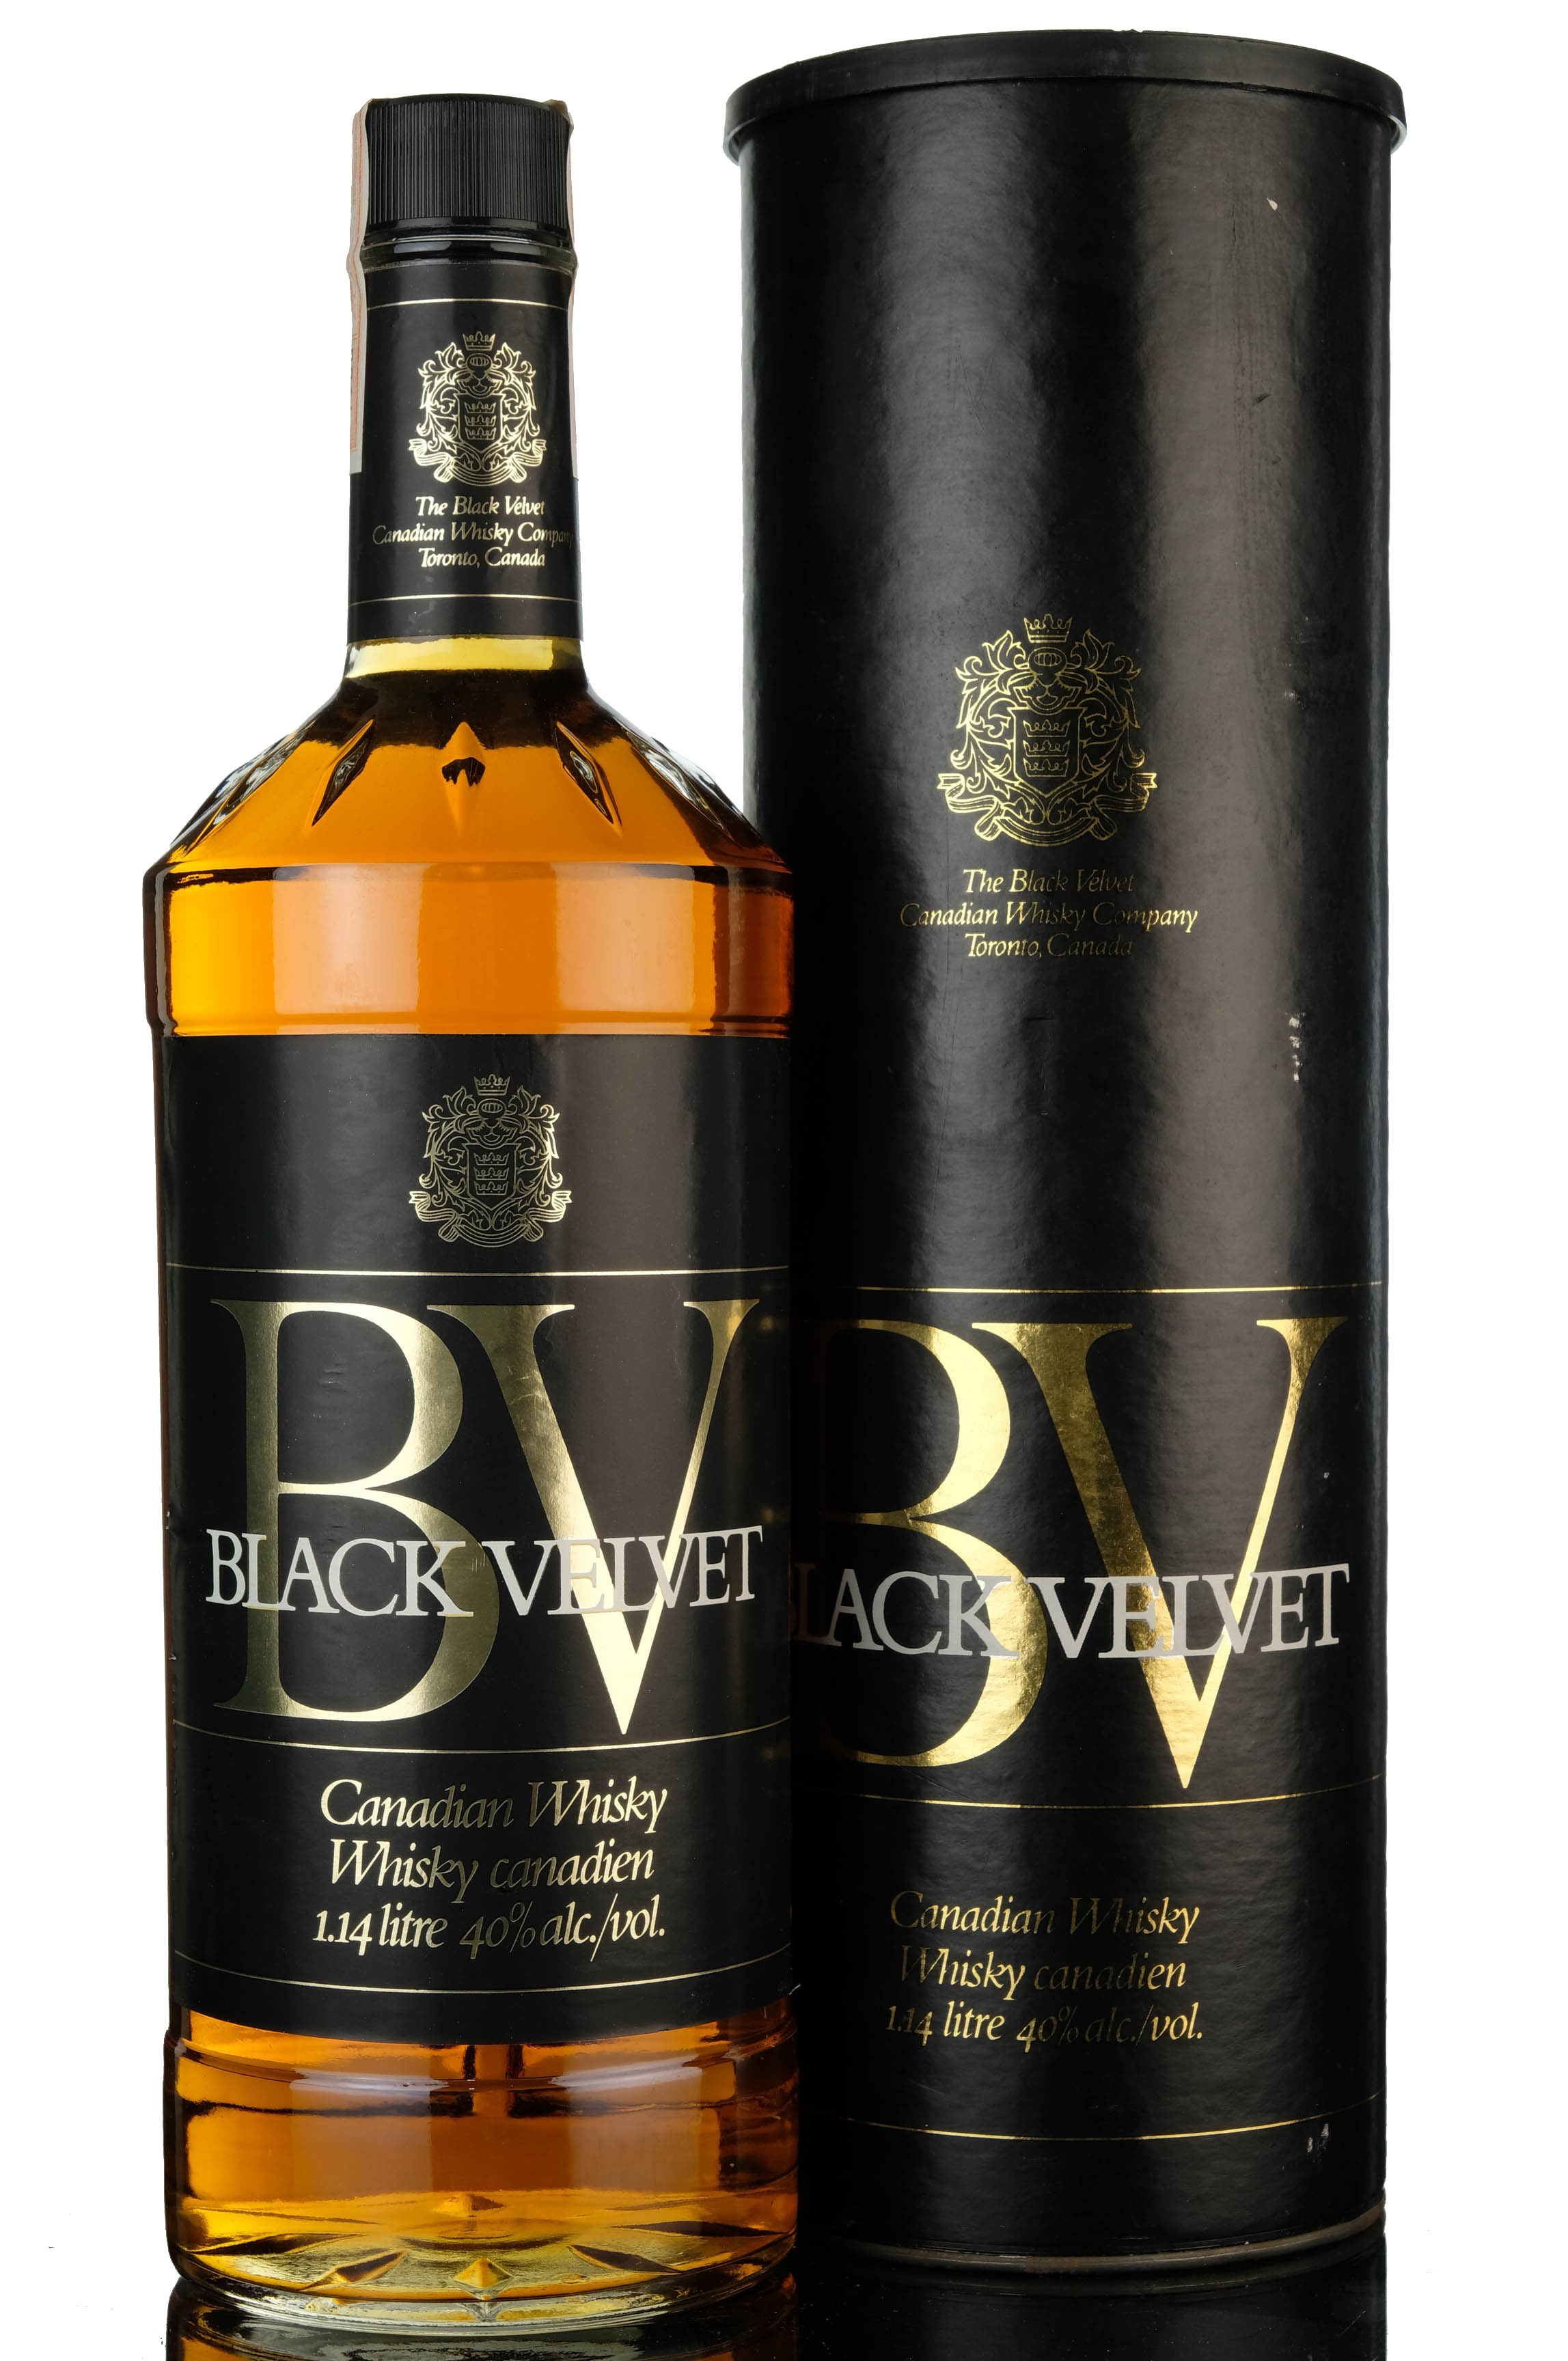 Black Velvet 1980 - Canadian Whisky - 1.14 Litre